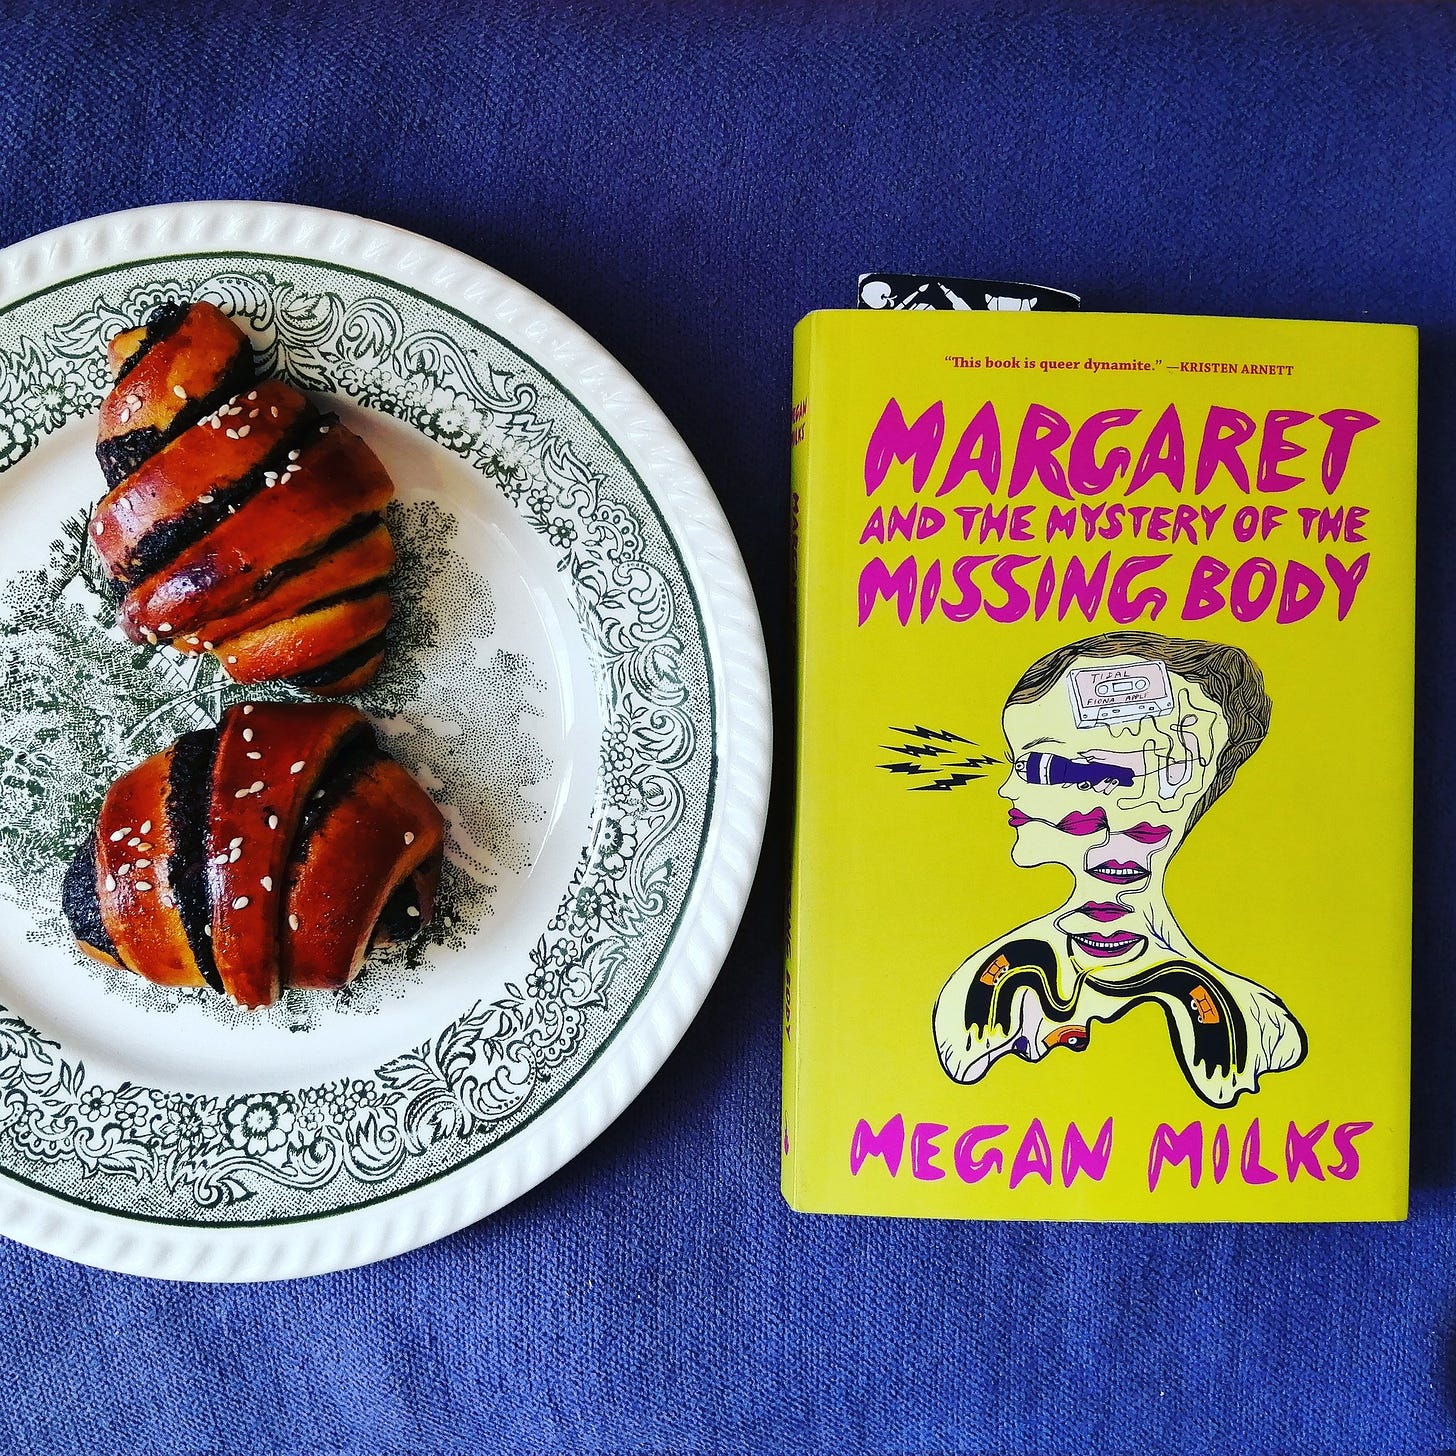 Auf einer blauen Decke liegt das Buch "Margaret and the mystery of the missing body" von Megan Milks, daneben steht ein weiß-grün gemusterter Teller, auf dem zwei Gebäckstücke liegen 